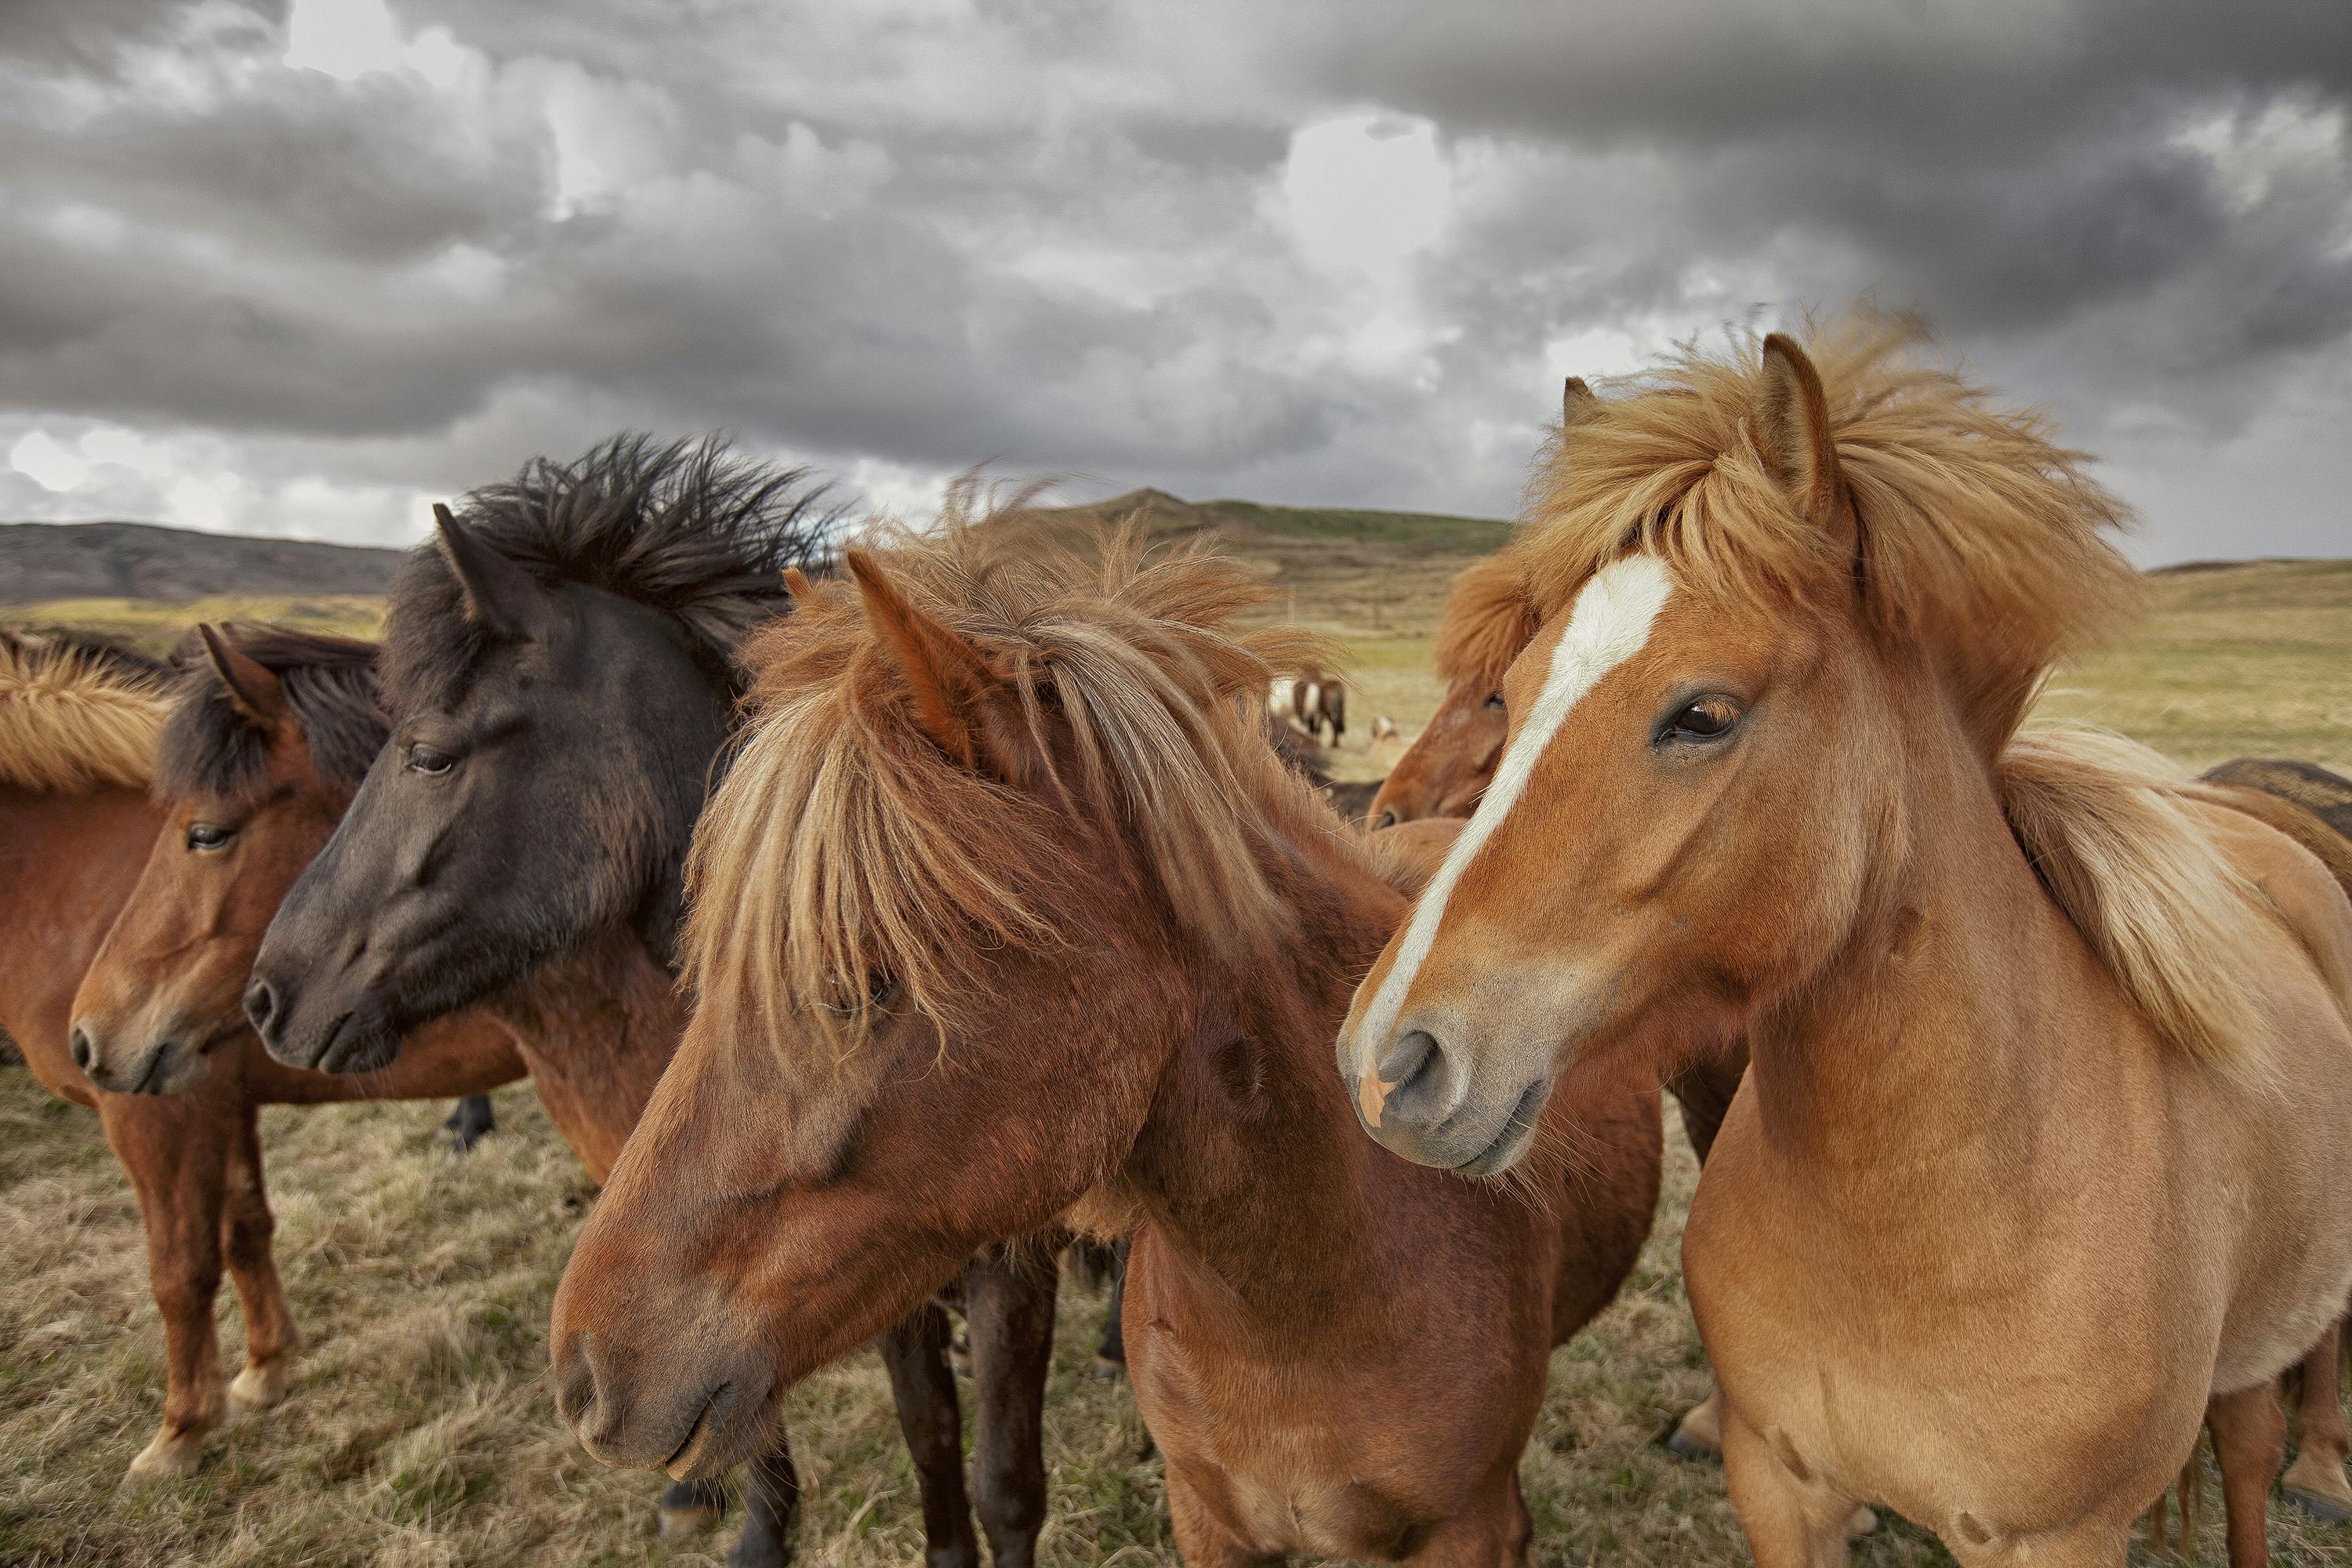 Jeśli koń islandzki kiedykolwiek opuści kraj, nie wolno mu wracać, aby utrzymać rasę zdrową i odizolowaną.